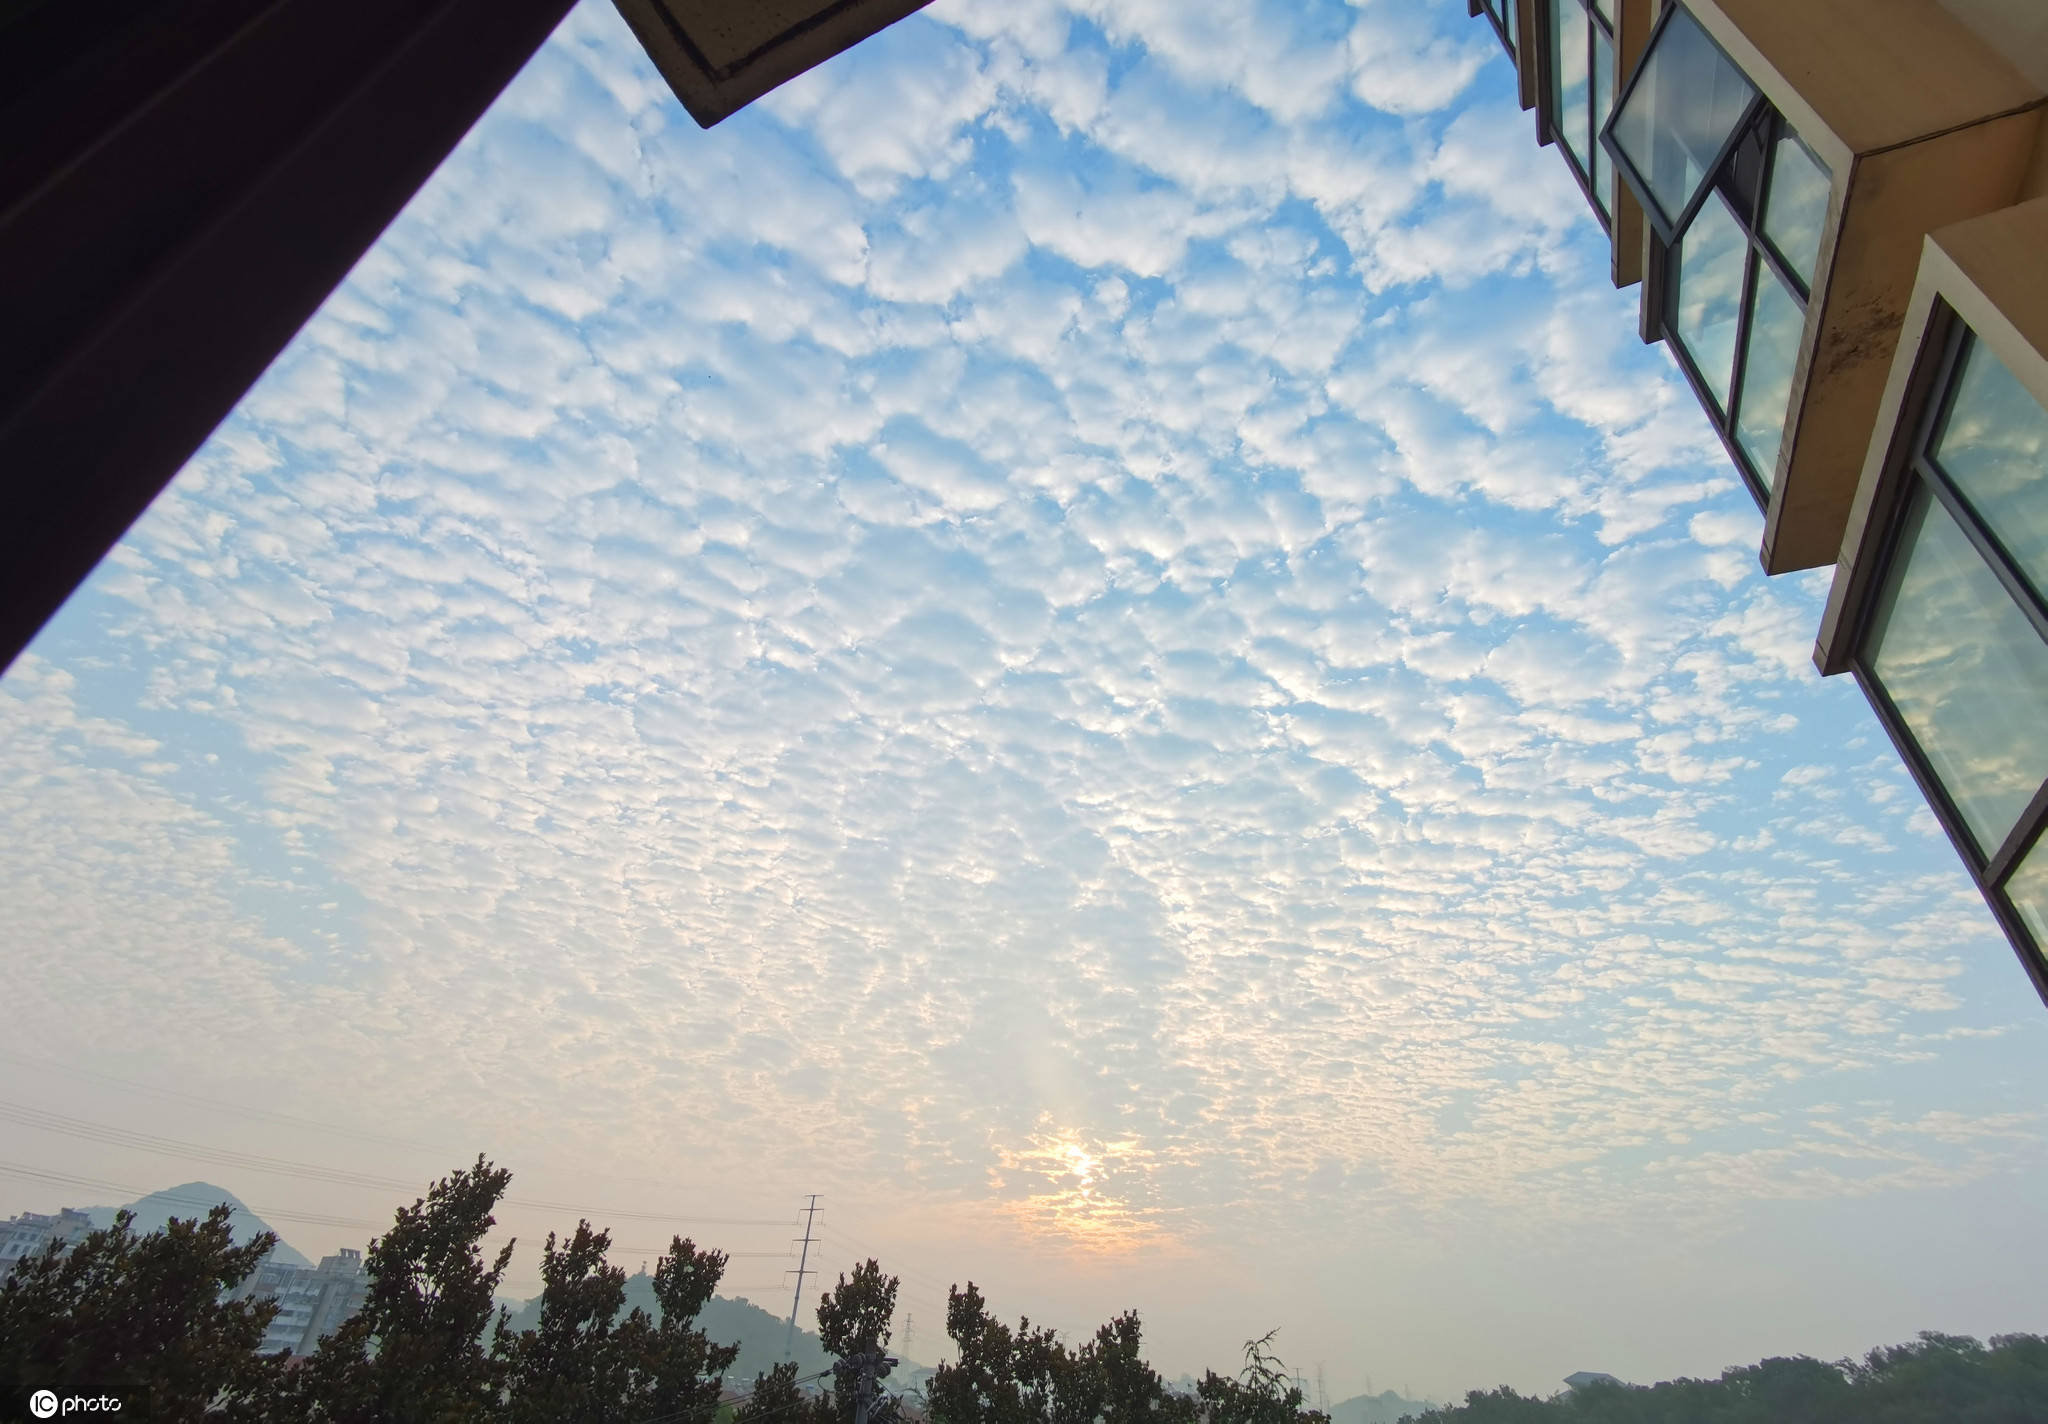 今天早上南京天空照片图片